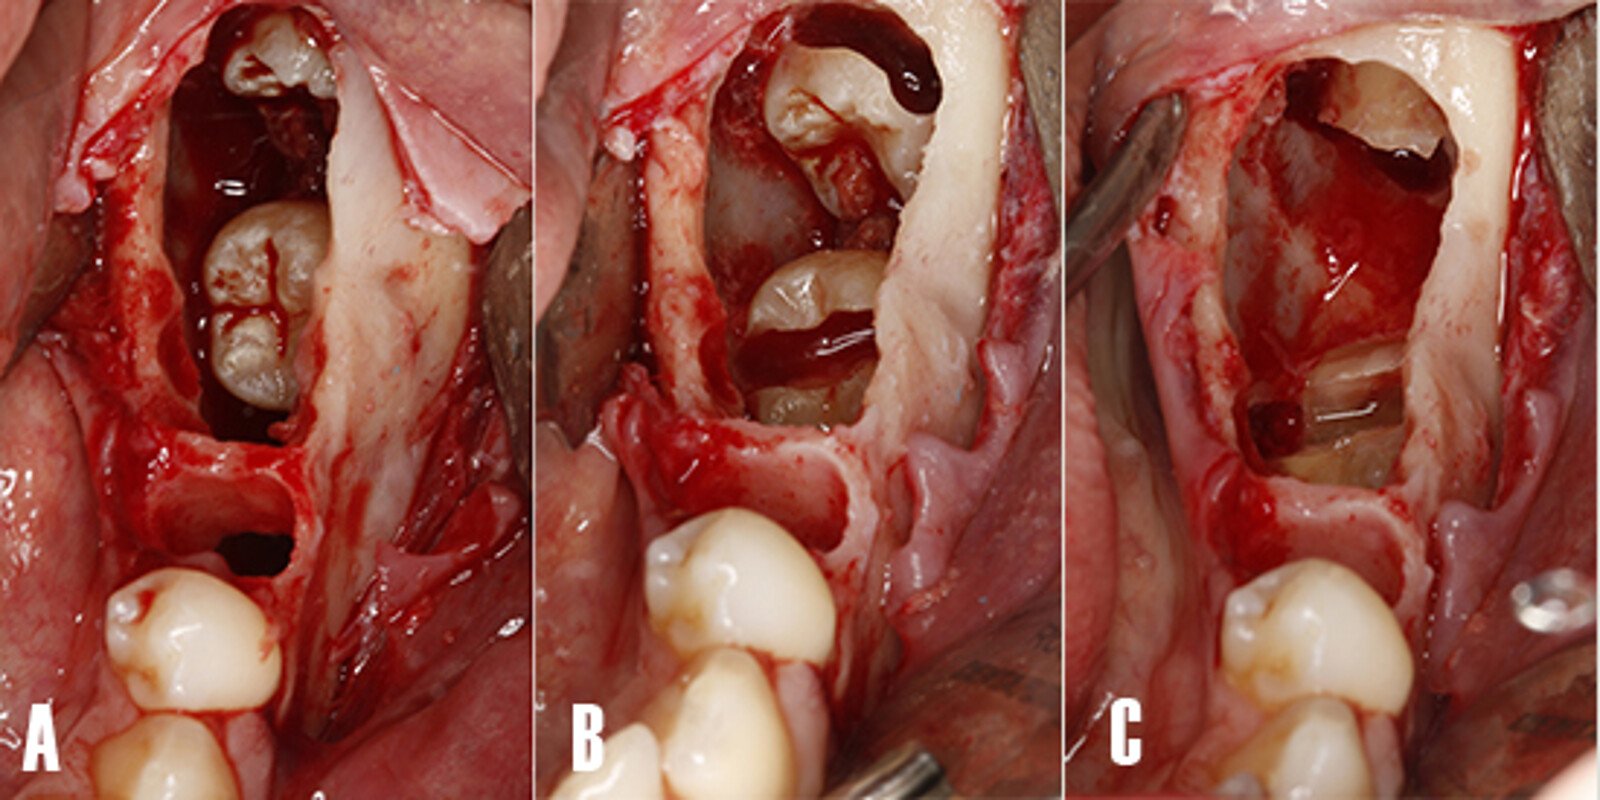 Figura 6. ExtracciÃ³n de los dientes impactados. Imagen intraoral - vista oclusal. A) Tras las extracciÃ³n de los dientes afectados por la rizÃ³lisis y posterior enucleaciÃ³n del quiste, se pudo visualizar los dientes impactados que causaron la patologÃ­a. B) Se procede a realizar la odontosecciÃ³n de la porciÃ³n coronal. C) ExtracciÃ³n de los fragmentos coronales tras la odontosecciÃ³n.